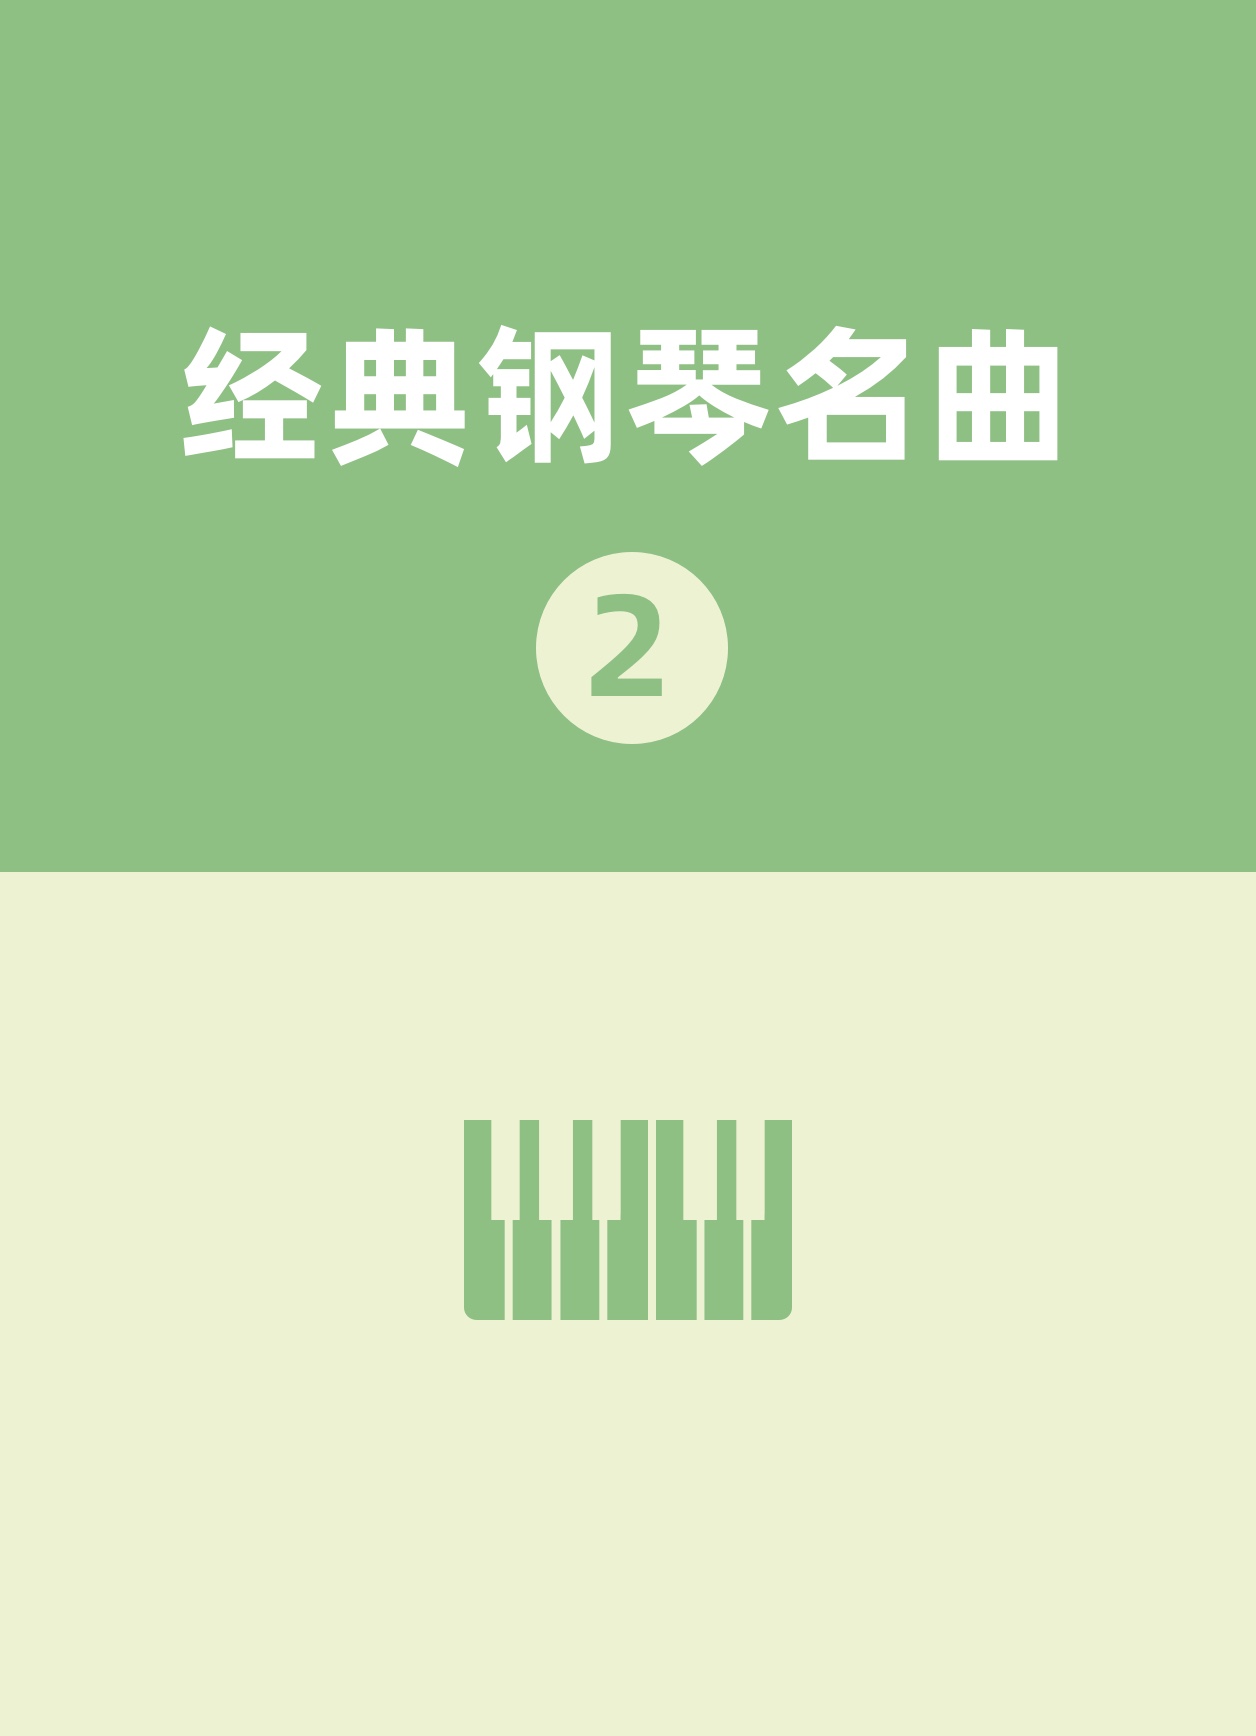 练习曲-11钢琴简谱 数字双手